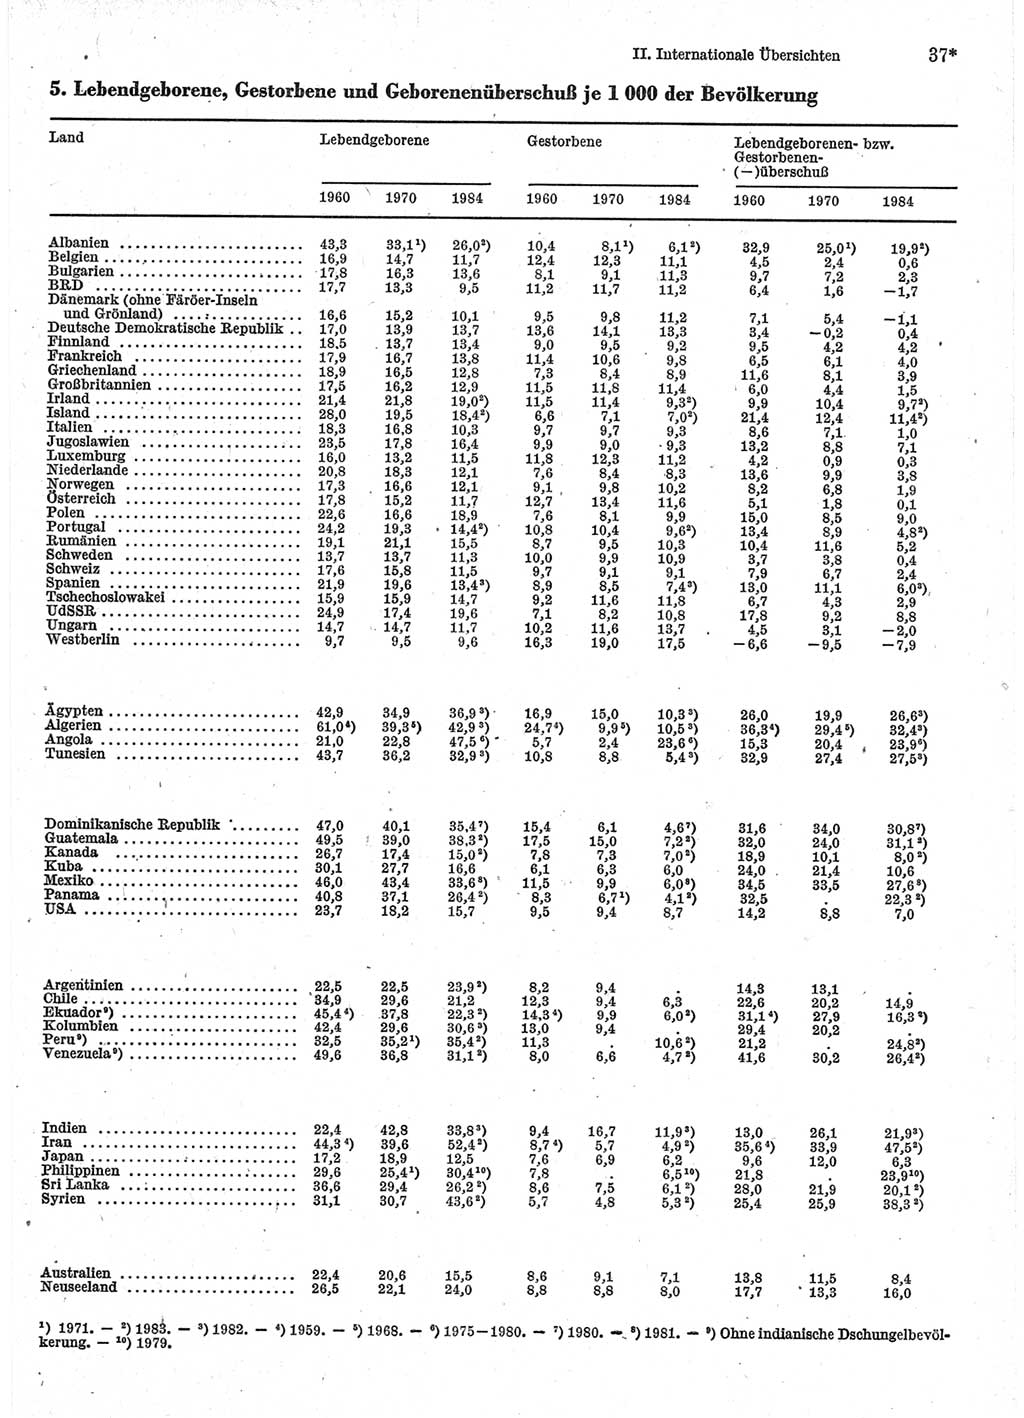 Statistisches Jahrbuch der Deutschen Demokratischen Republik (DDR) 1986, Seite 37 (Stat. Jb. DDR 1986, S. 37)